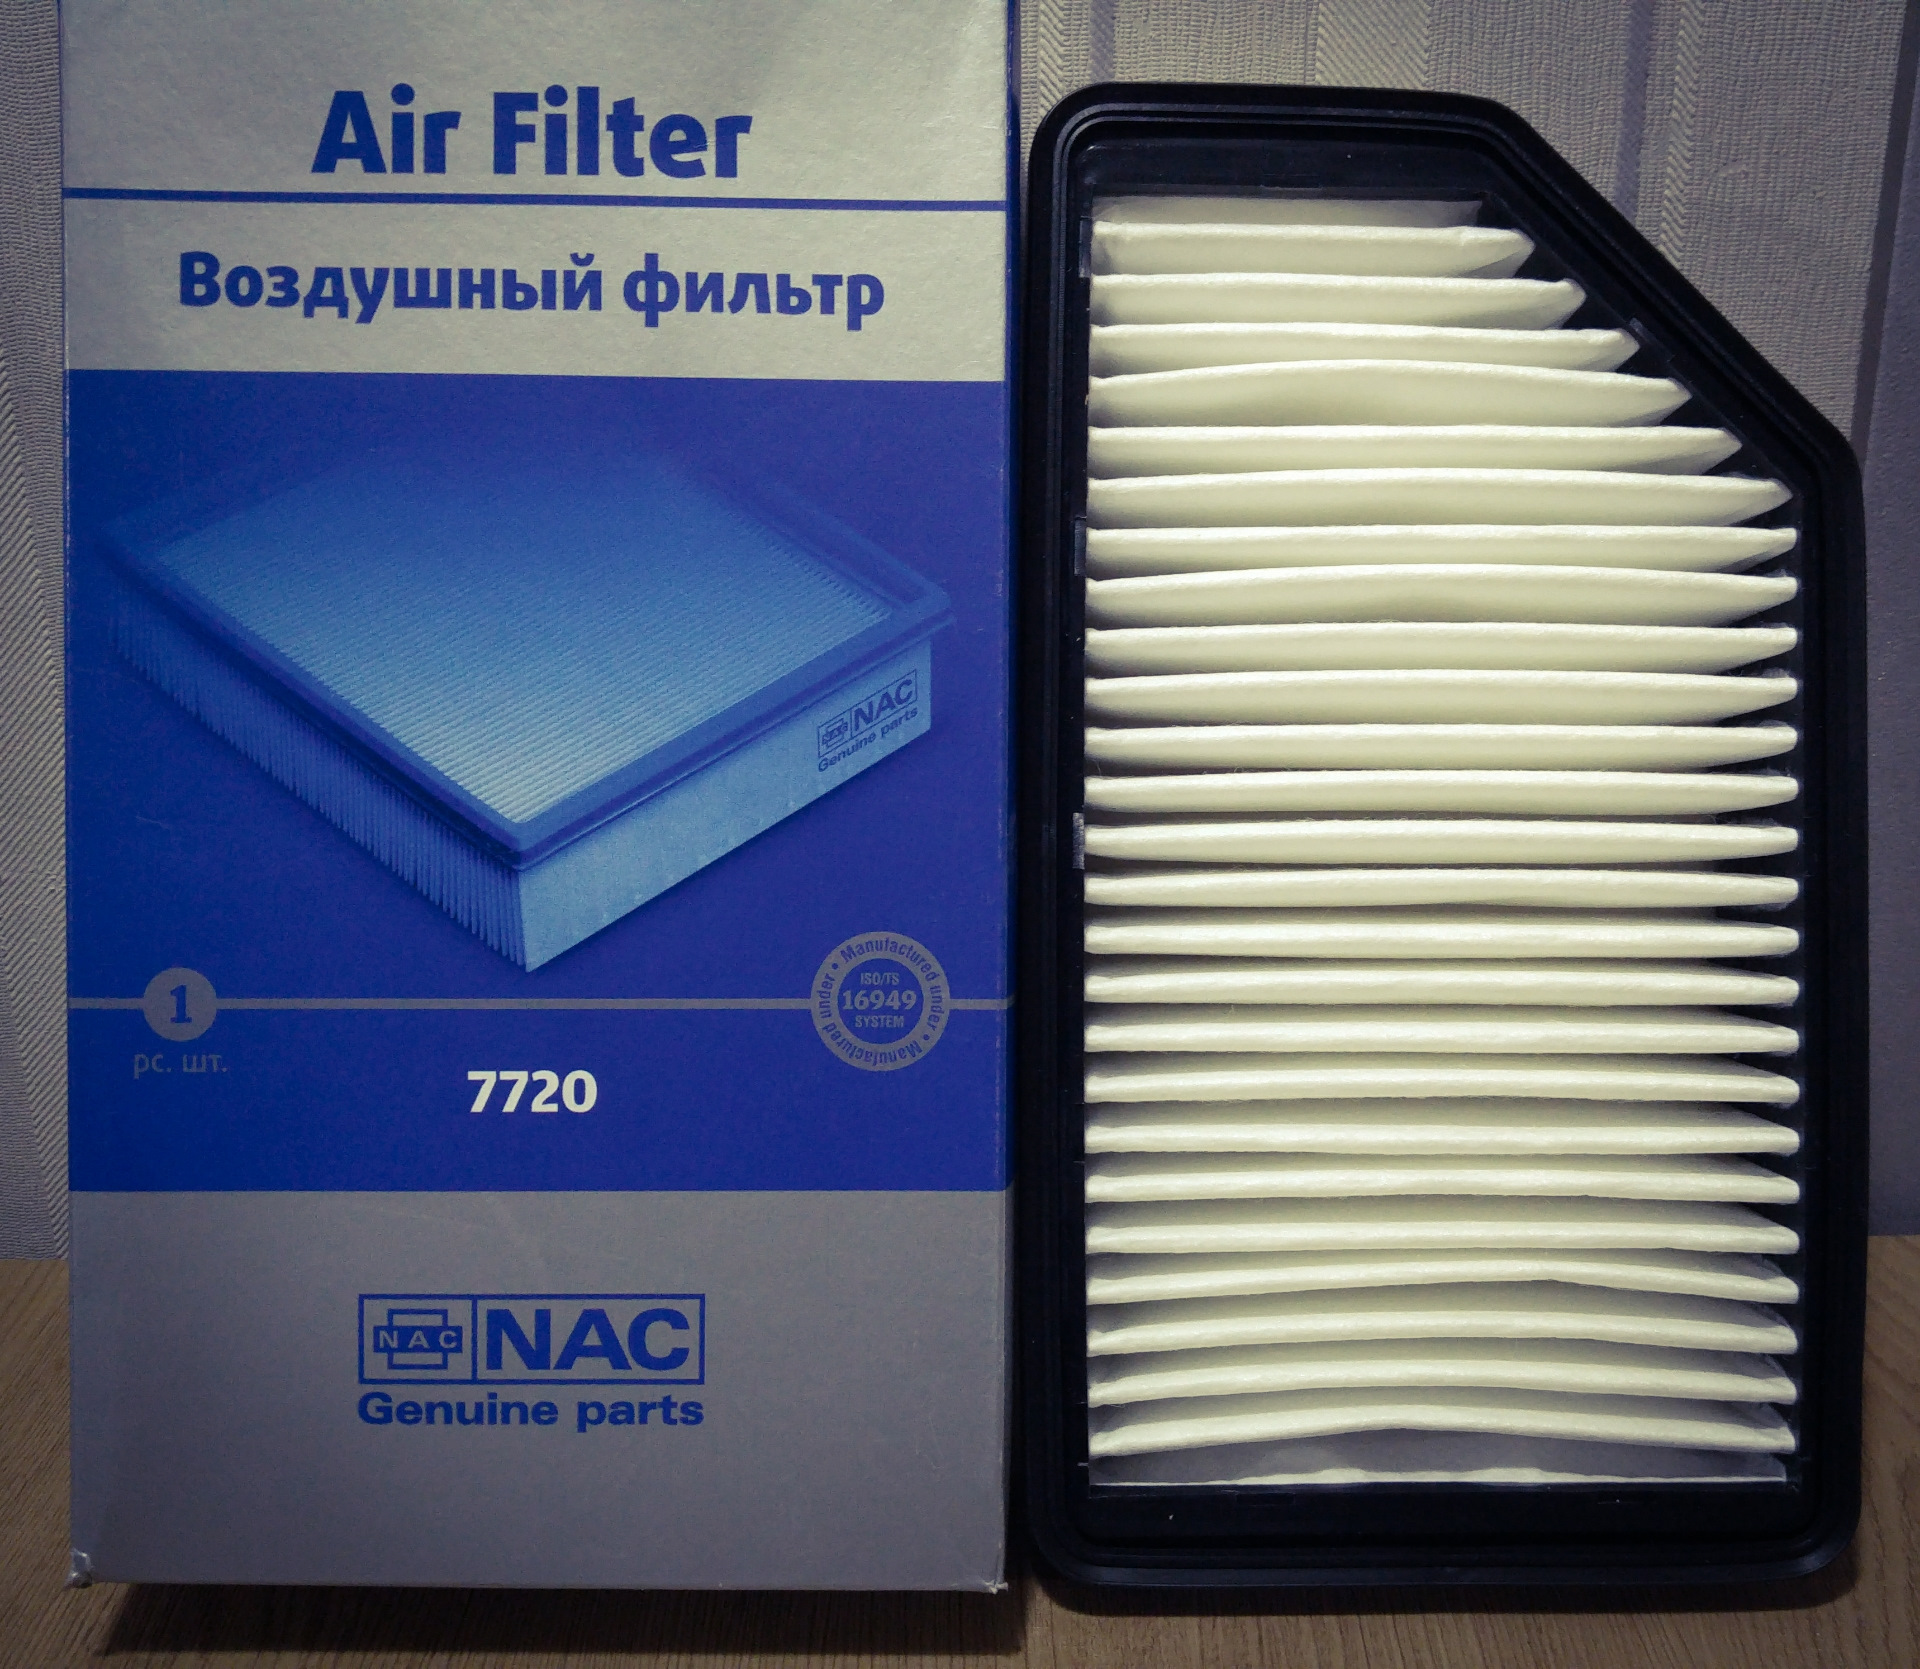 Воздушный фильтр nac. Фильтр воздушный NAC 7720. Фильтр воздушный 7750 NAC. Фильтр воздушный Солярис 2011 1.6. Воздушный фильтр Солярис 1.6 2015.